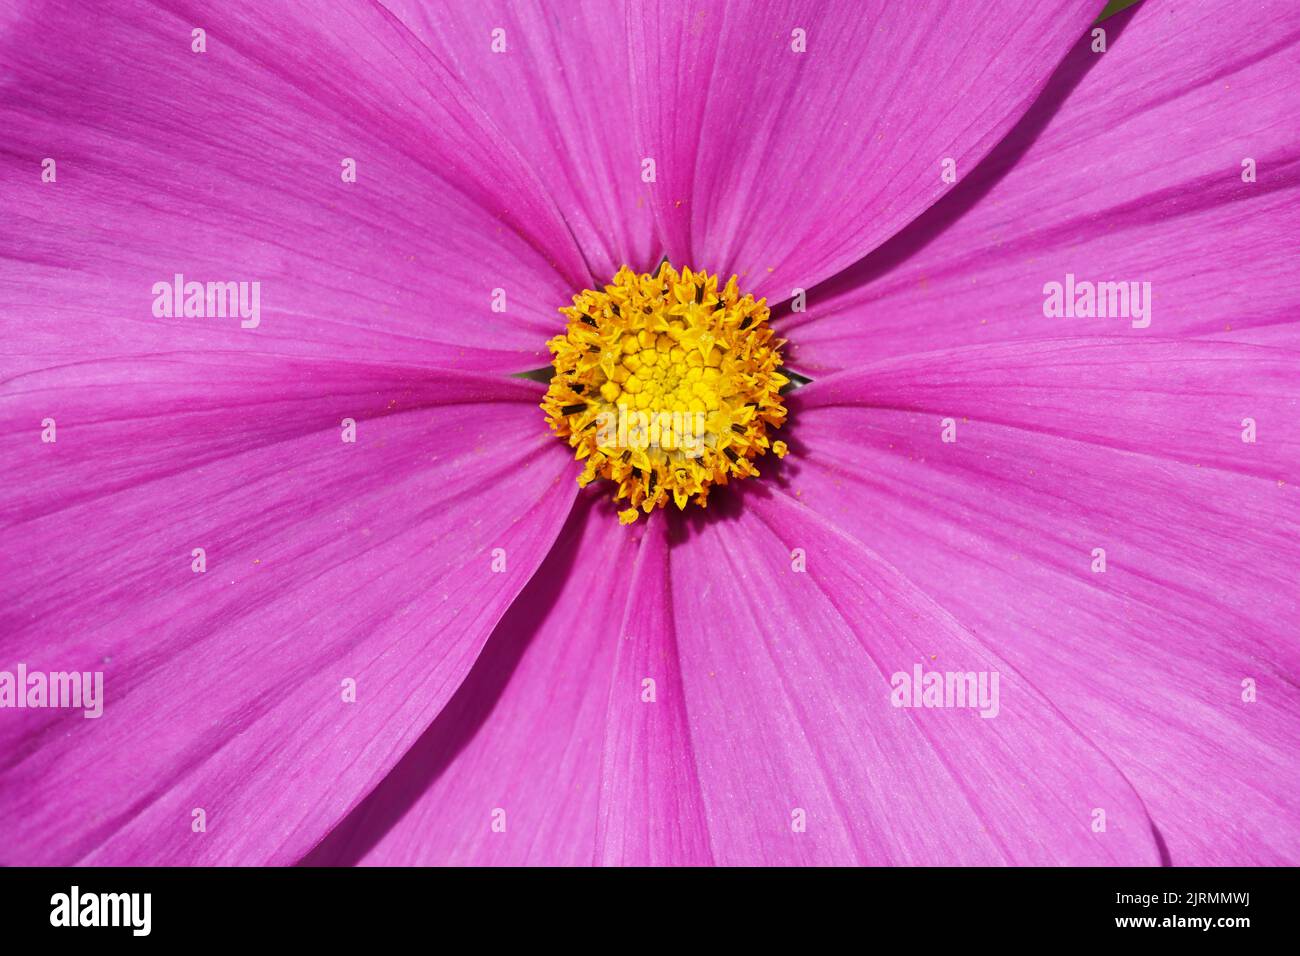 Cosmea, Cosmos fleur en gros plan. Fleur rose avec pollen jaune Banque D'Images